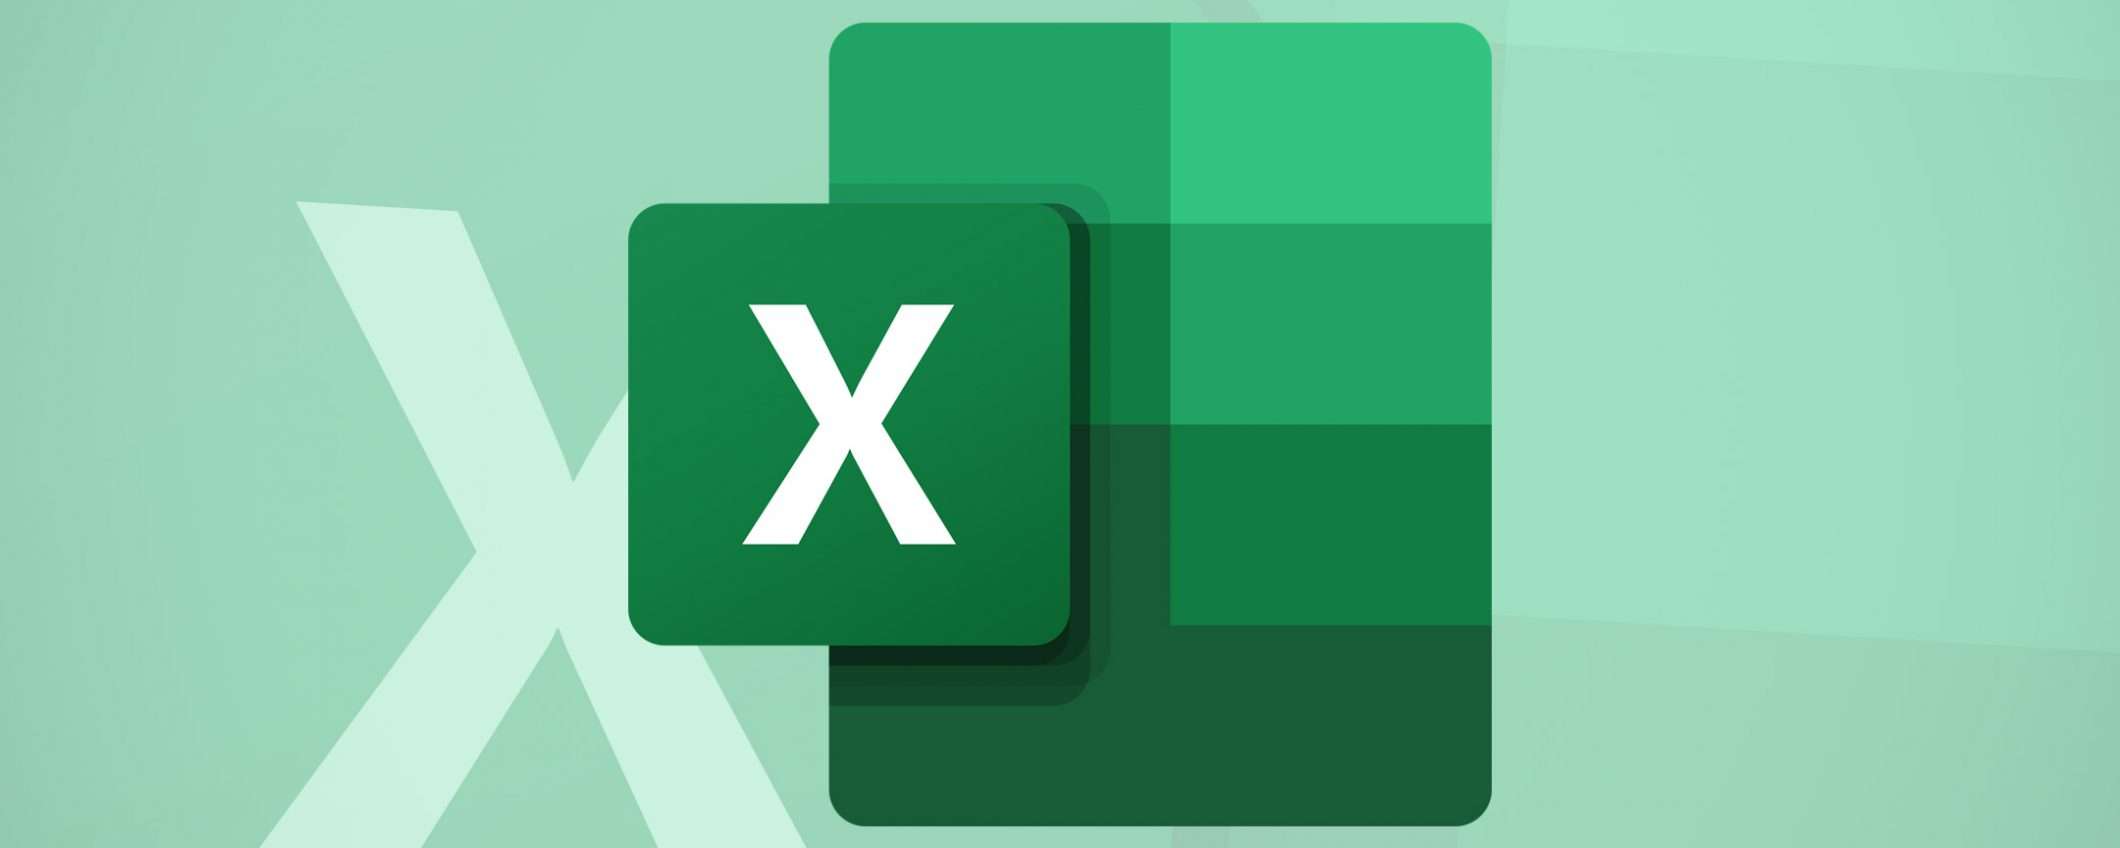 Udemy: corso completo su Microsoft Excel a soli 14,99 Euro